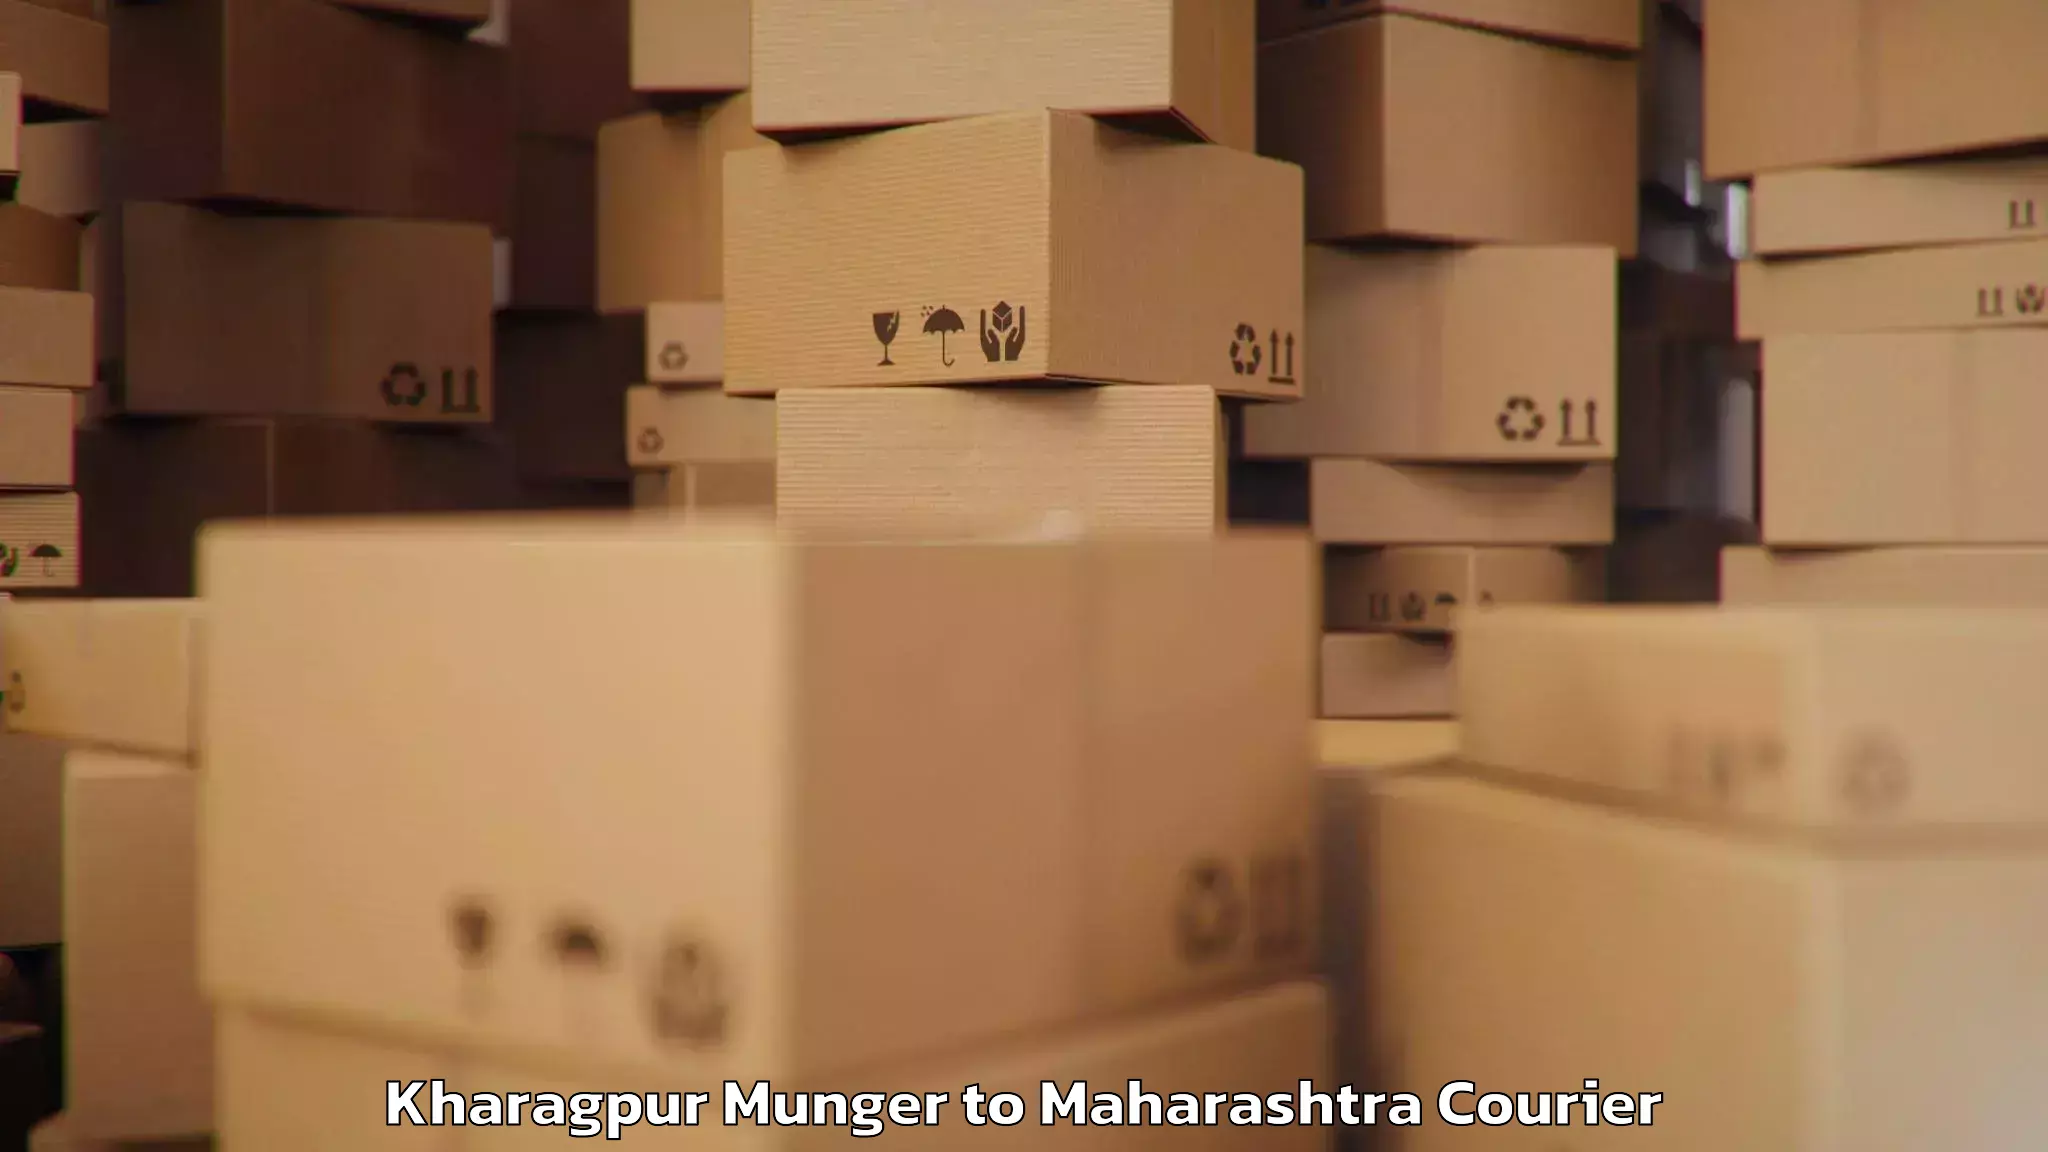 Baggage courier strategy Kharagpur Munger to Dindori Nashik